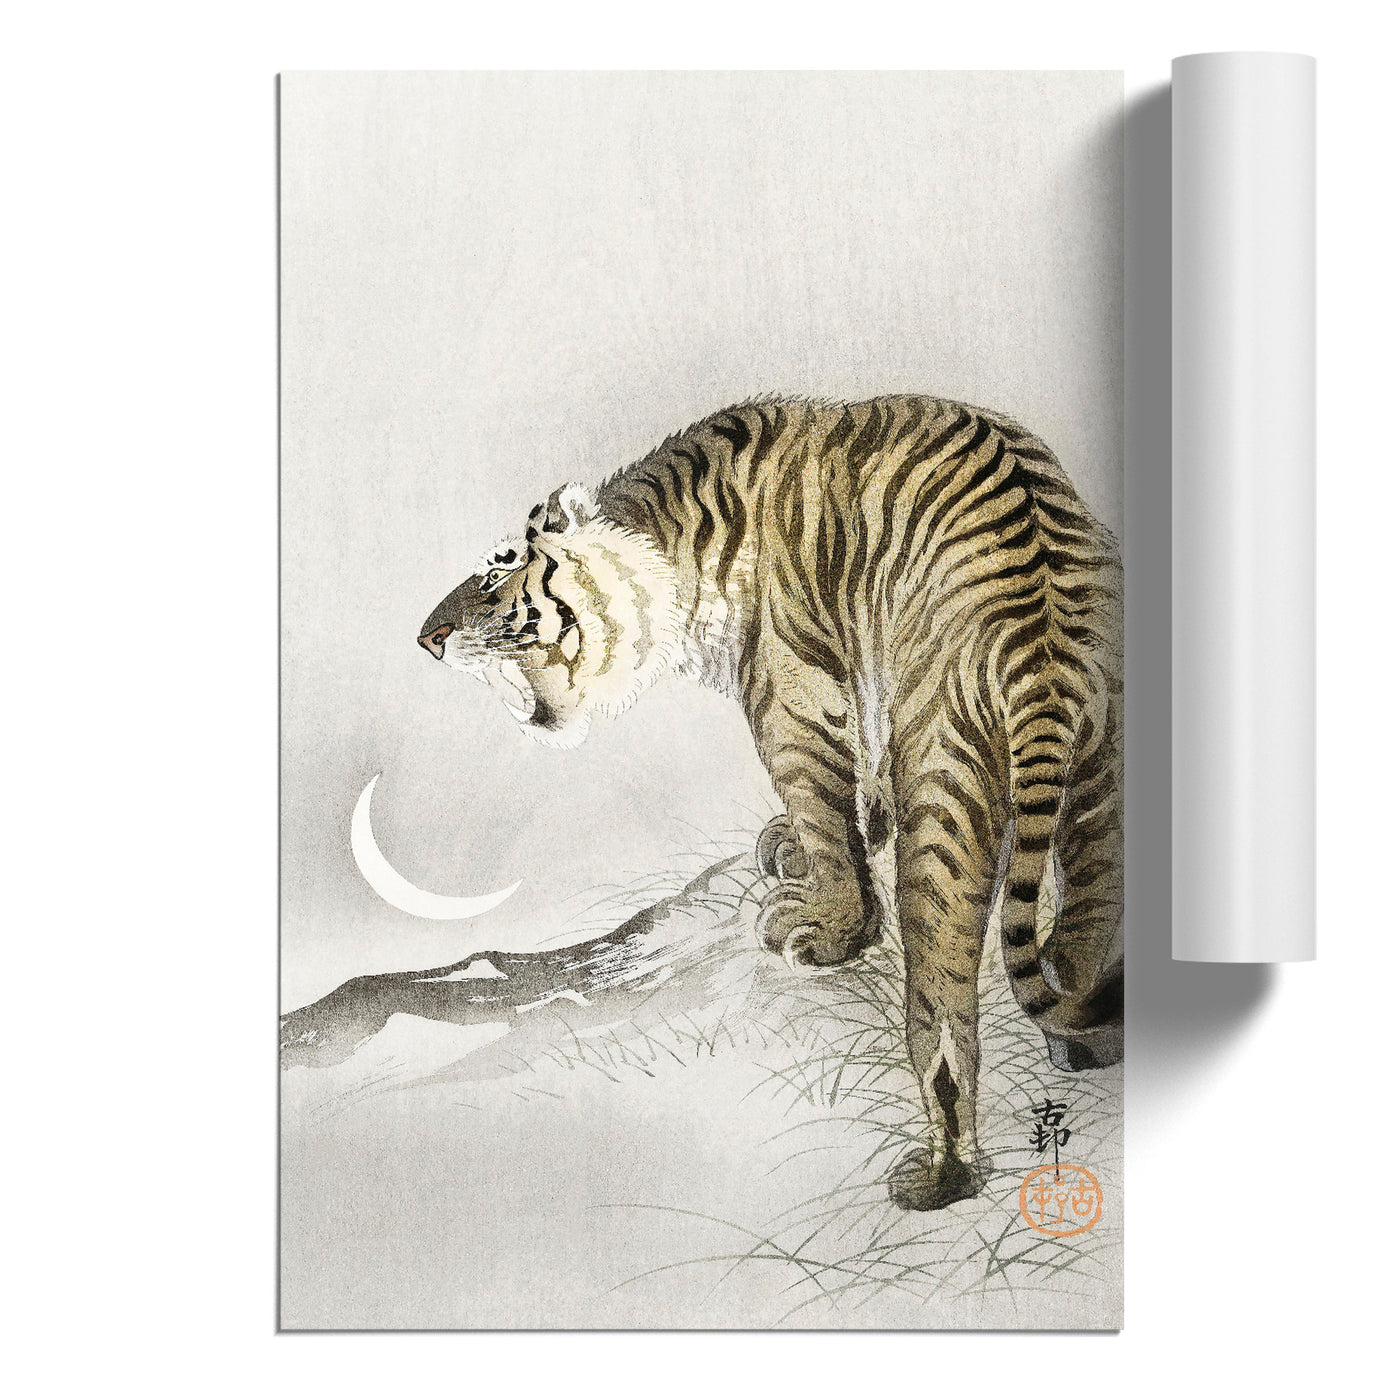 Roaring Tiger By Ohara Koson